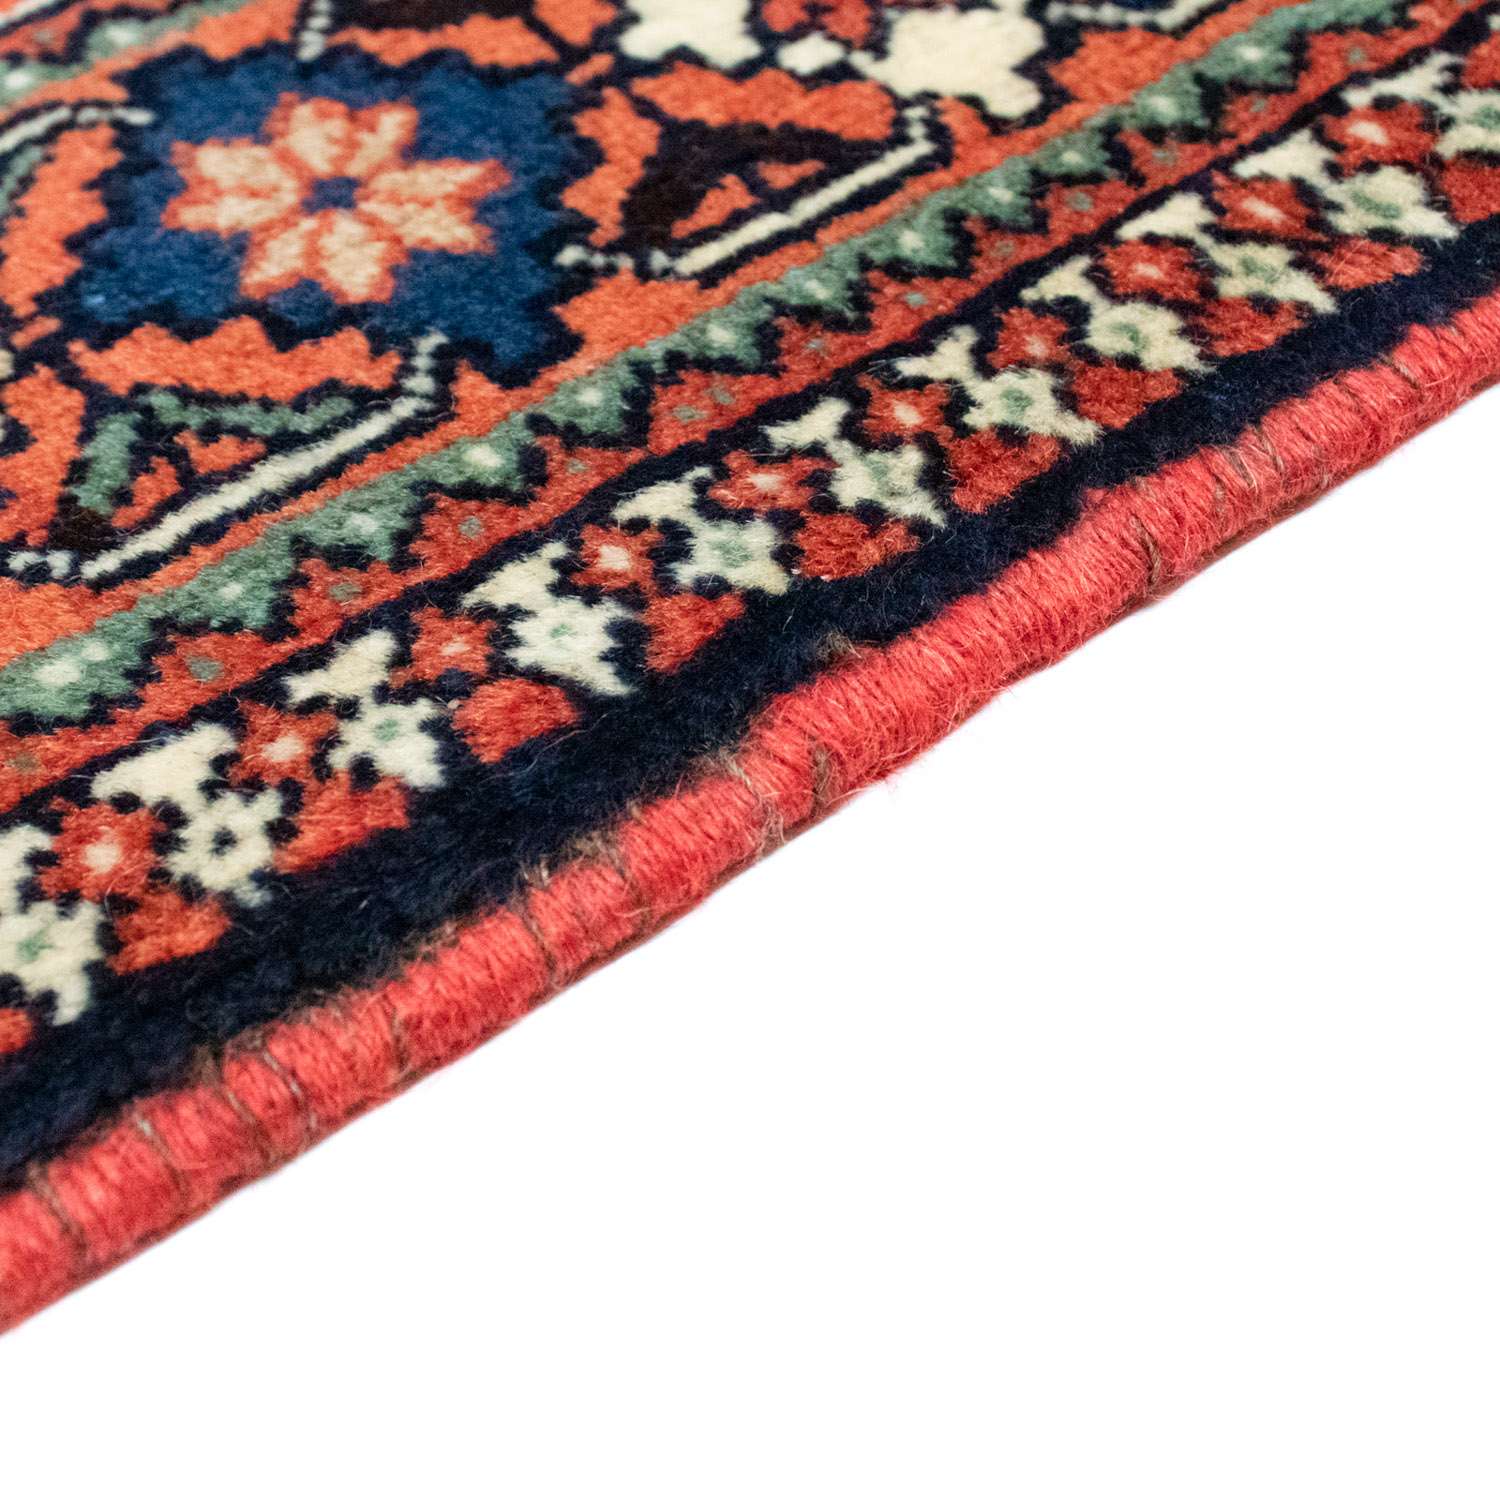 Persisk teppe - Nomadisk - 200 x 150 cm - flerfarget